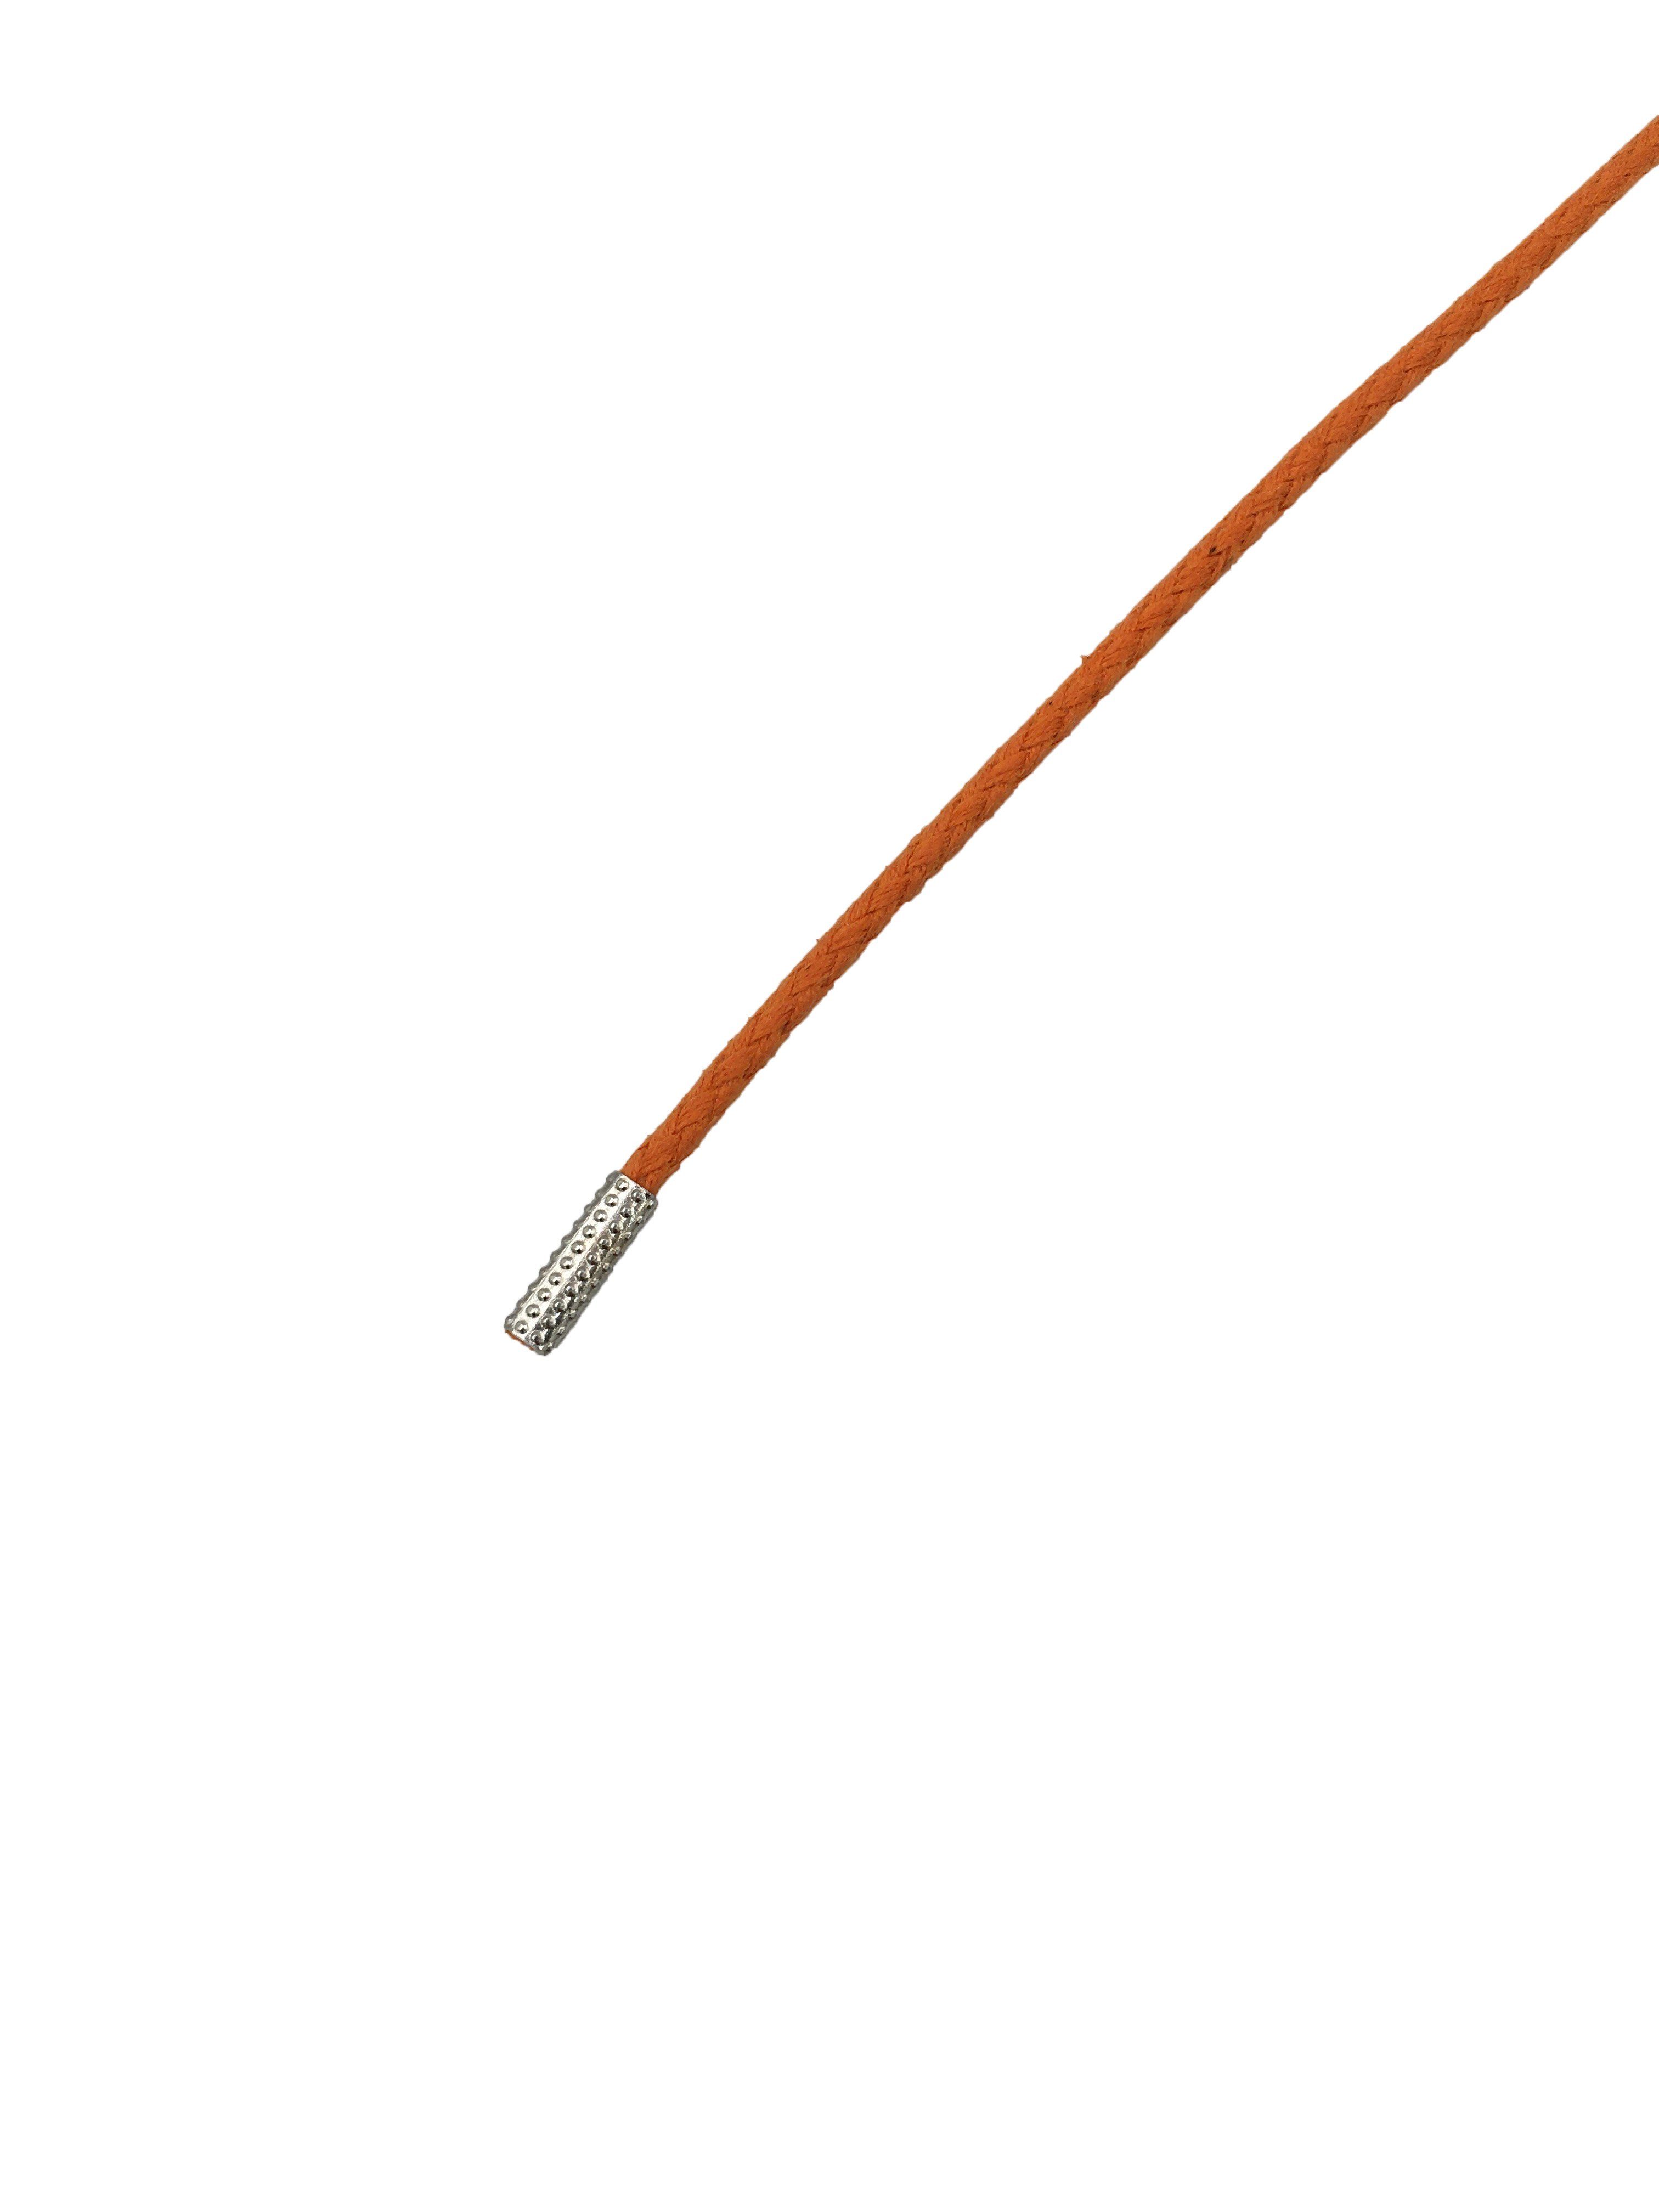 Rema Schnürsenkel Rema Schnürsenkel Orange - rund - gewachst - Kordel - ca. 2,5 mm dünn für Sie nach Wunschlänge geschnitten und mit Metallenden versehen